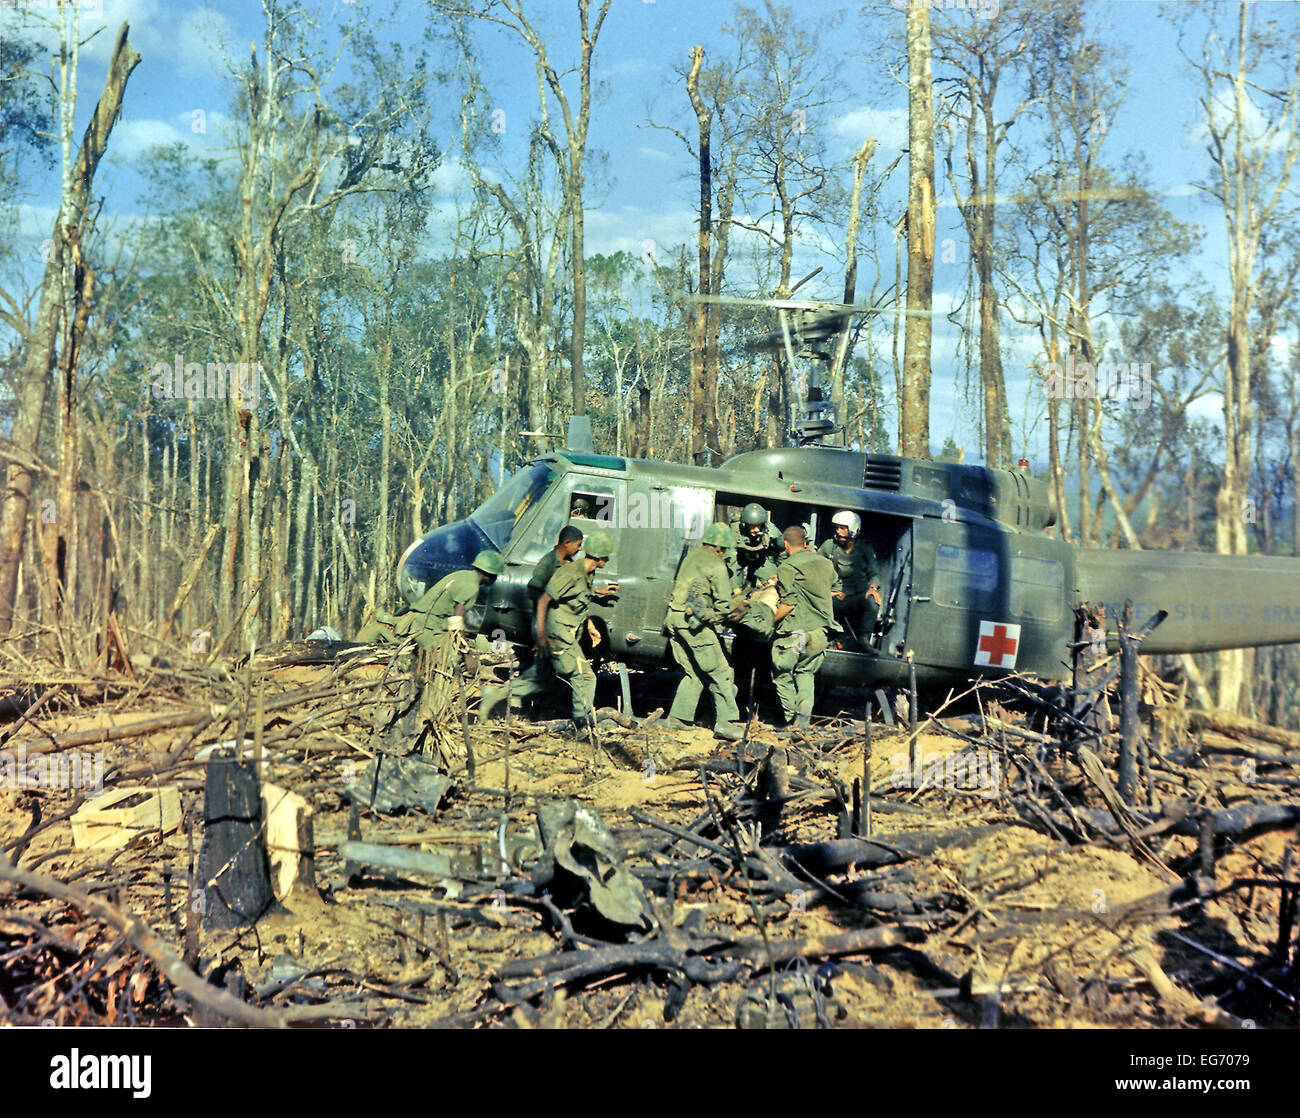 Mitglieder des vierten Bataillons, 173rd Airborne Brigade, laden die Verwundeten an Bord eines Hubschraubers der UH - 1D für die Evakuierung nach dem Angriff auf Hügel 875, das Hotel liegt 15 Meilen westlich von Dak To, Vietnam am 23. November 1967. Foto: Alfred Batungbacal - US Army (c) Dpa - Bericht Stockfoto